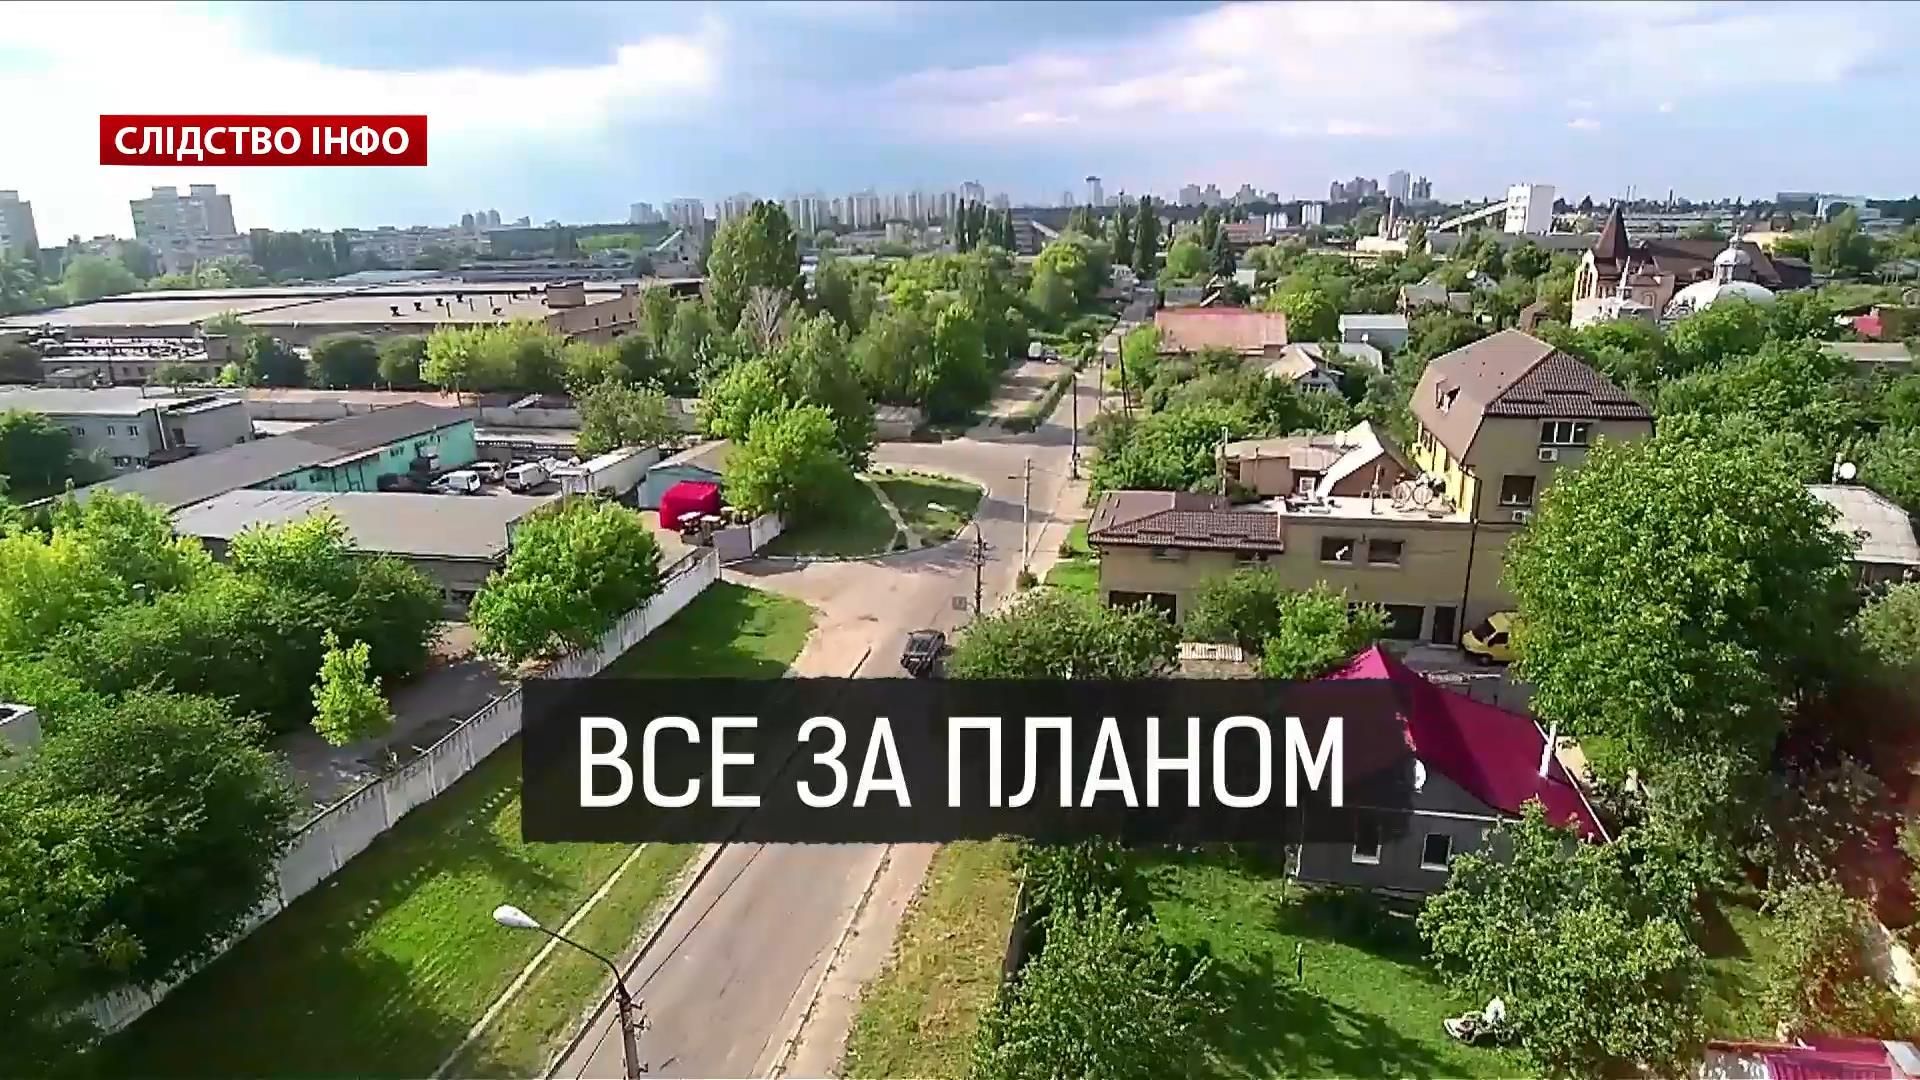 Скандальные киевские застройки: как разрабатывается план города против воли киевлян